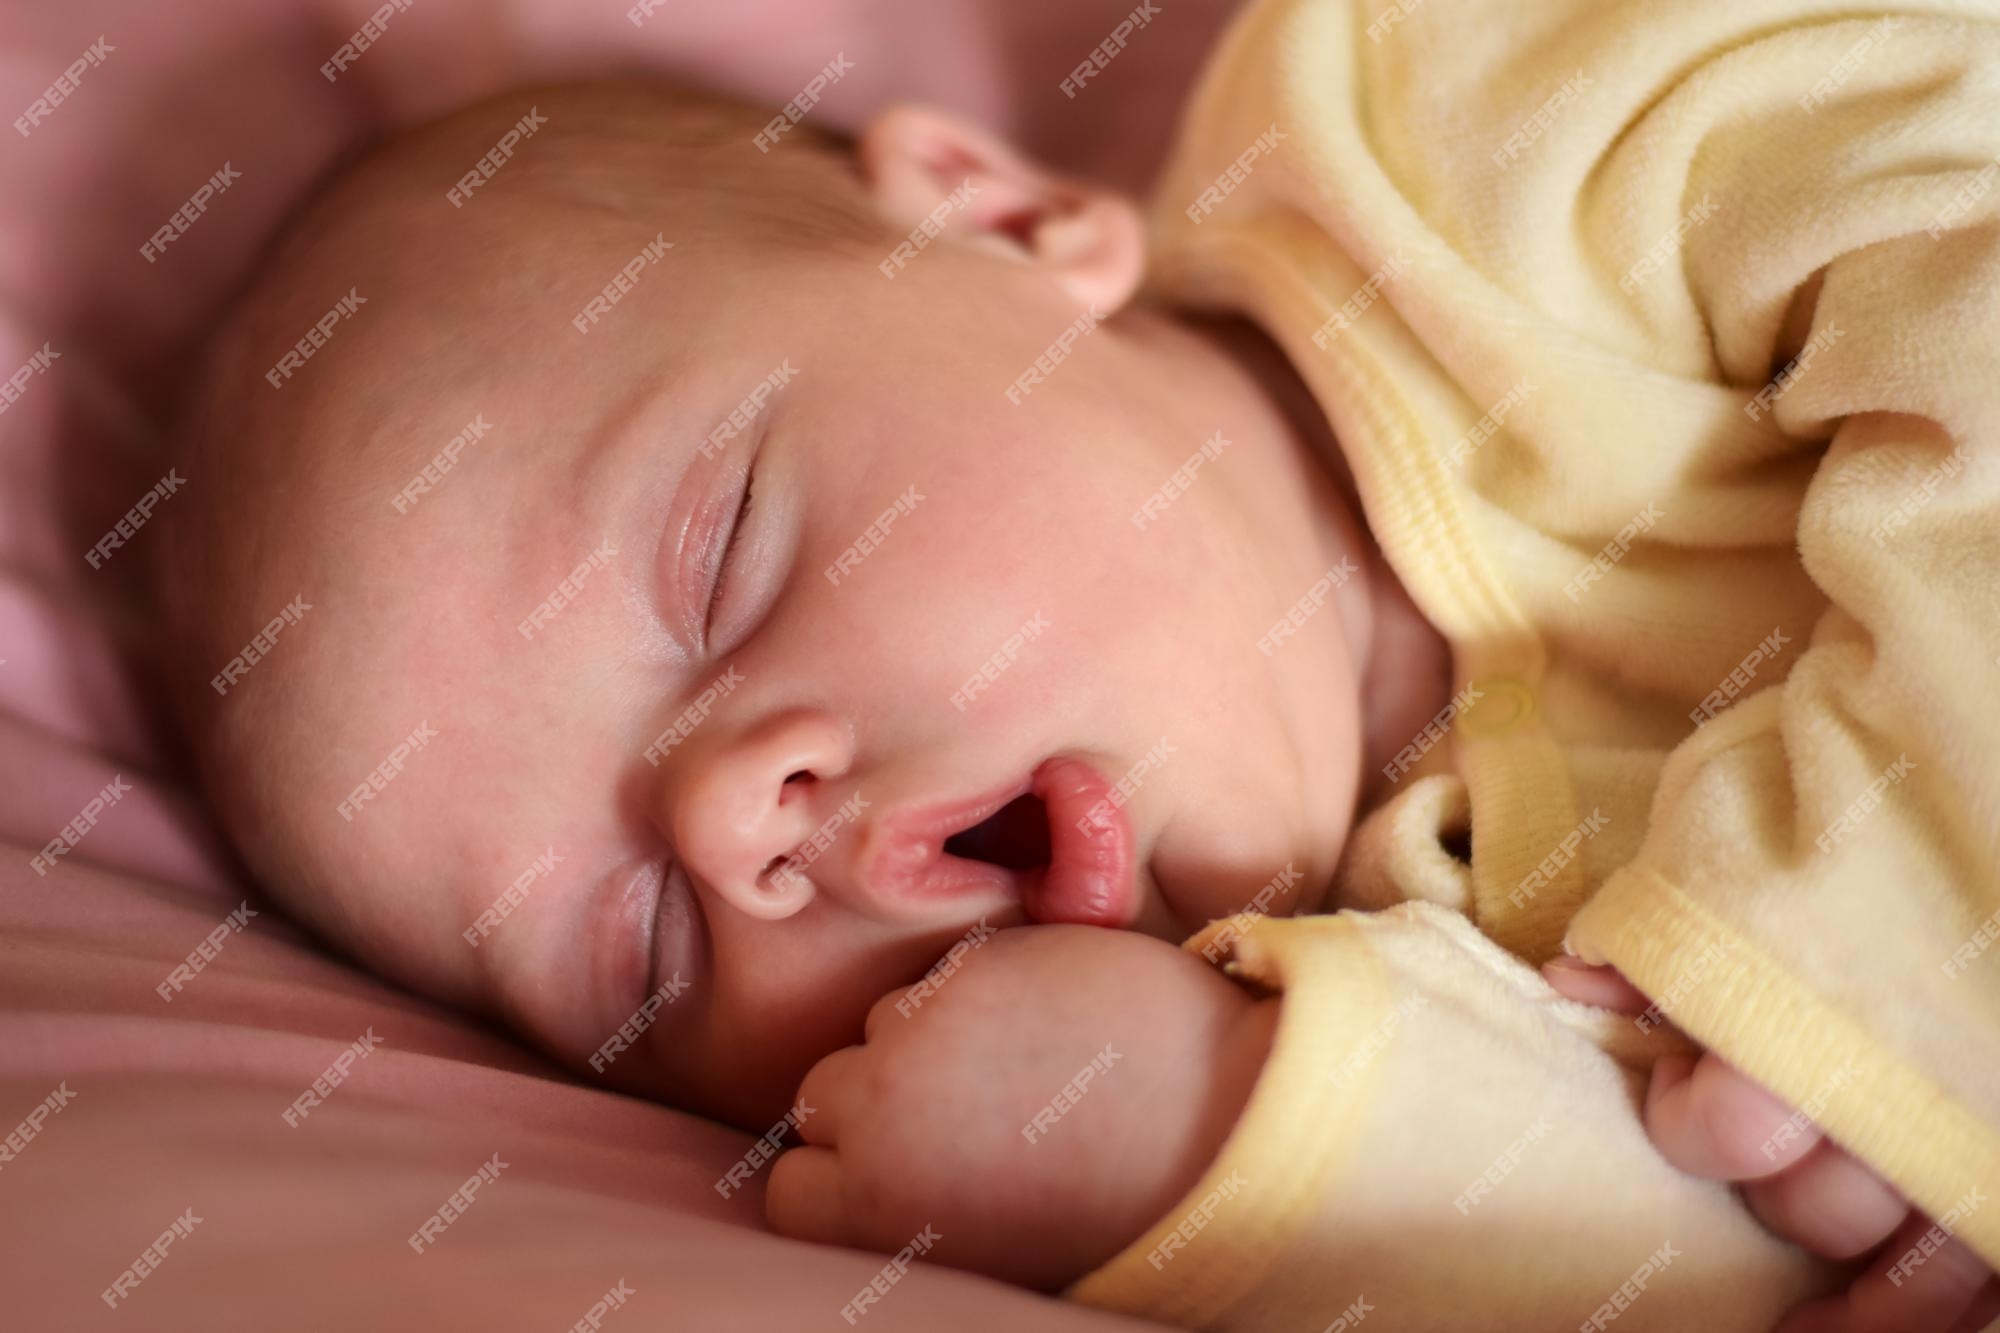 El bebé nacido duerme con la boca abierta. una, dos semanas de edad. pequeña durmiendo o despertándose mientras está acostada en una cama morada en casa. nueva vida y concepto